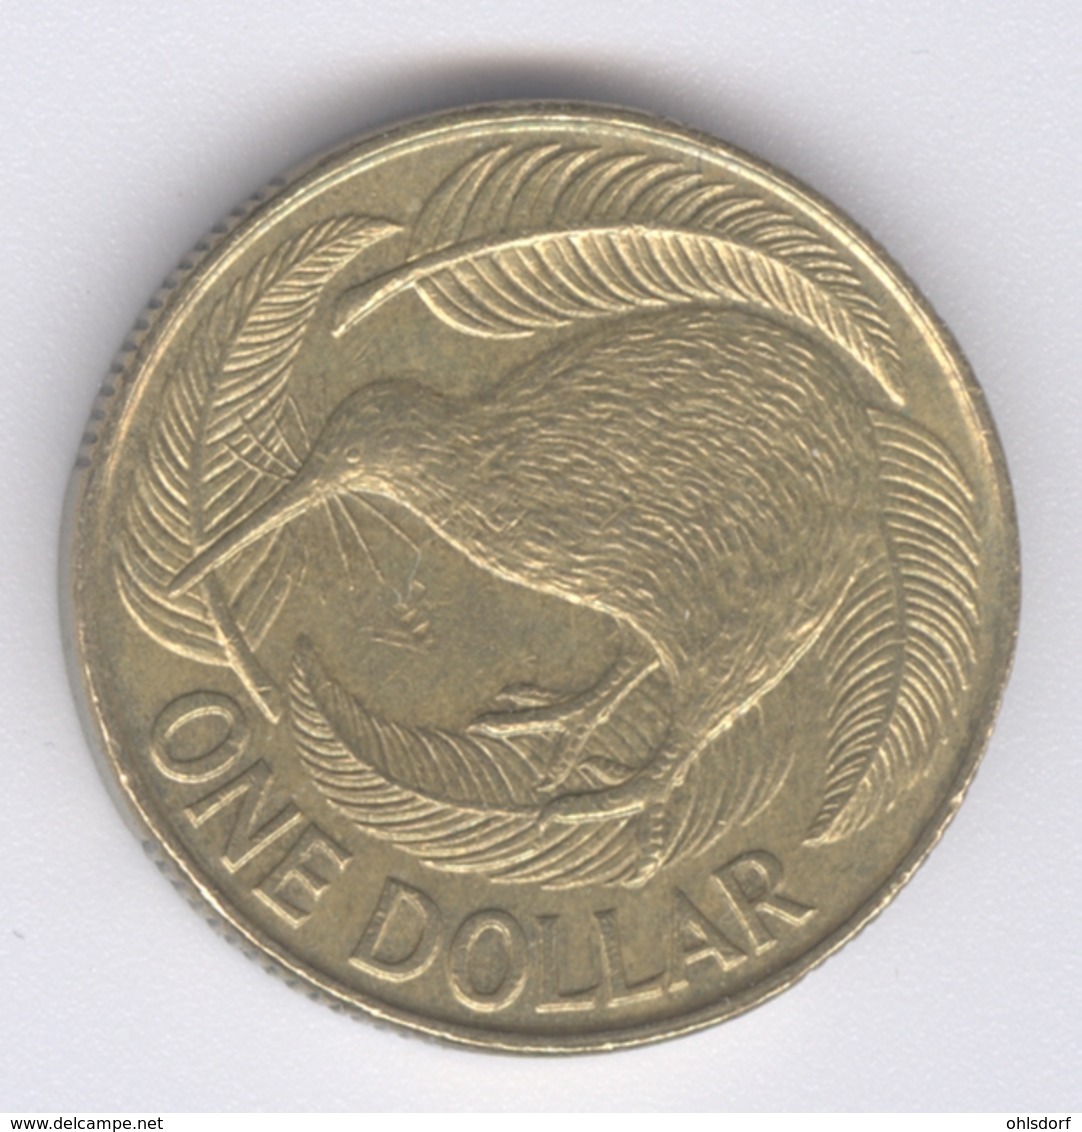 NEW ZEALAND 1990: 1 Dollar, KM 78 - New Zealand